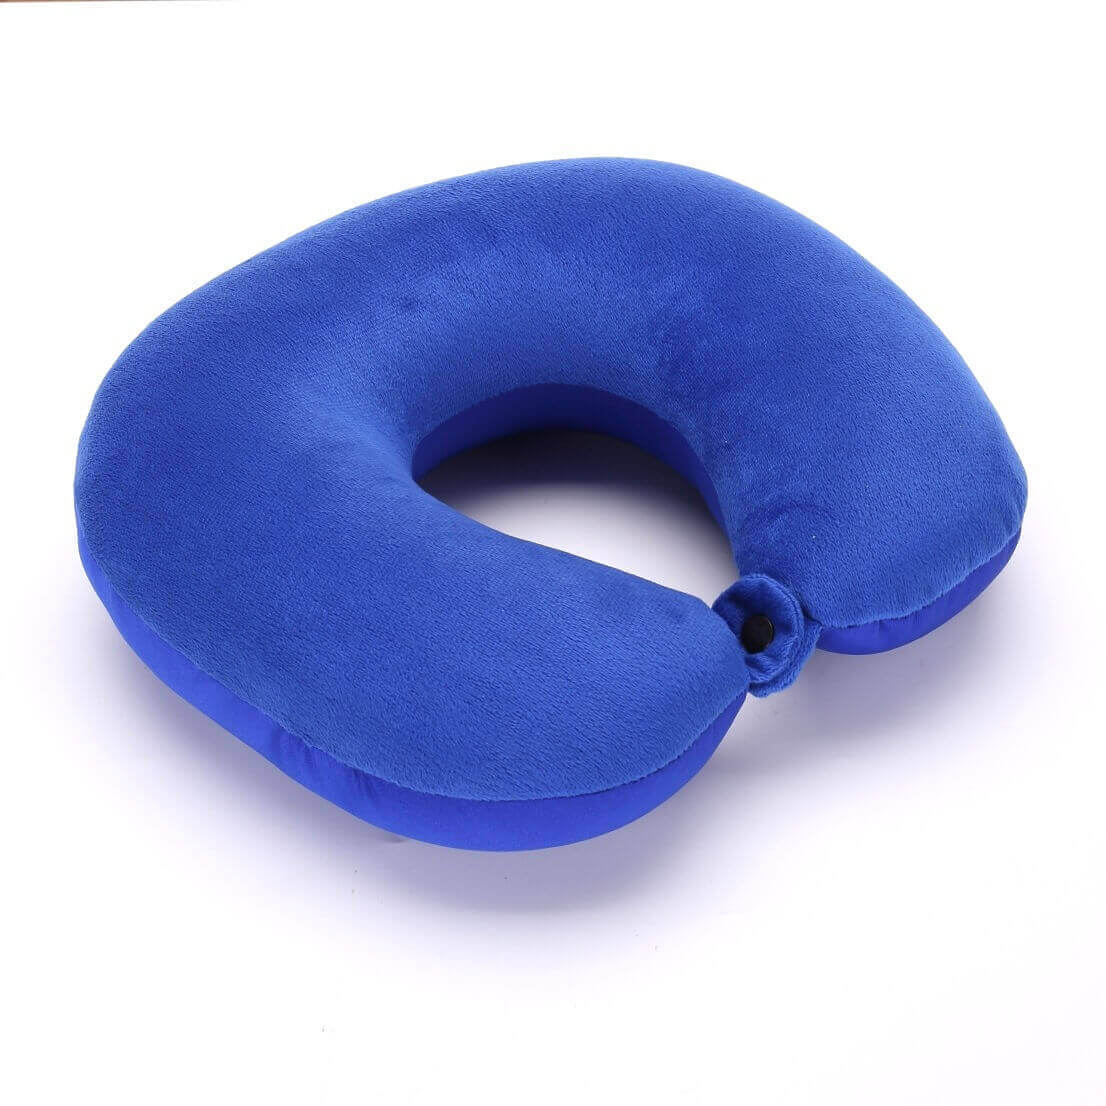 Fanwer memory foam travel pillow, deep blue